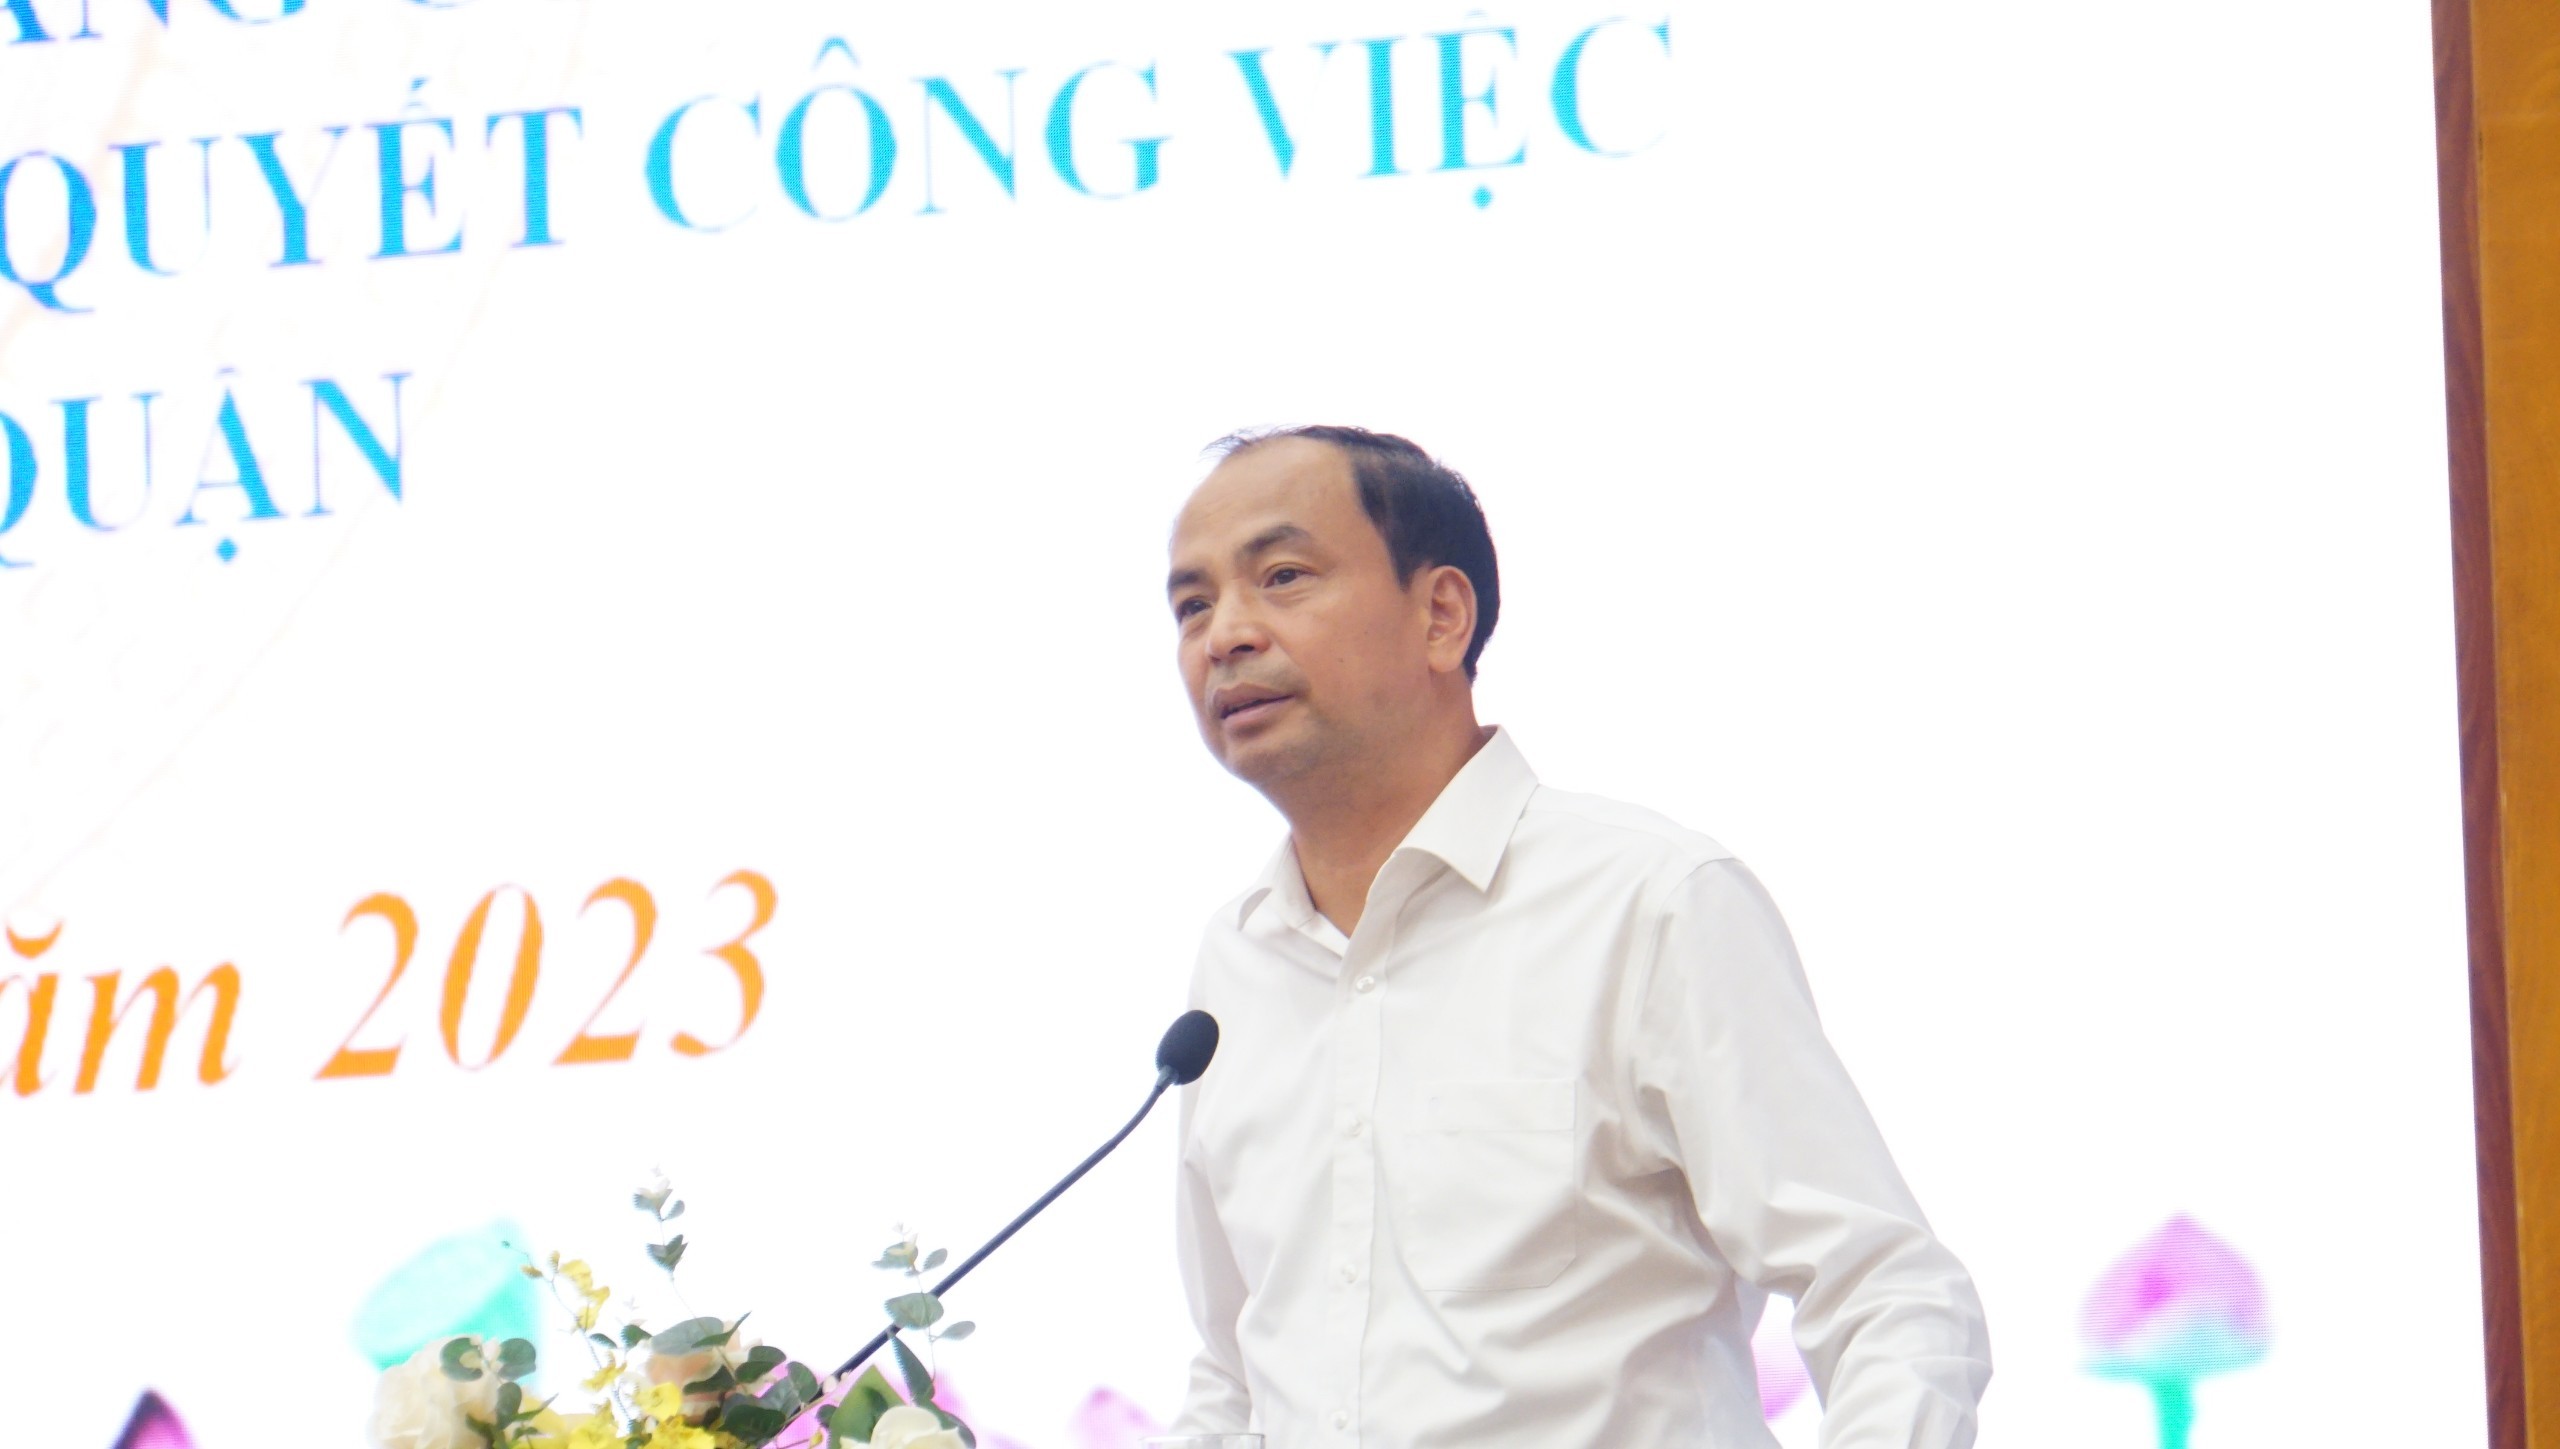 Đứng đầu Ông Nguyễn Đình Khuyến, Chủ tịch UBND quận Tây Hồ khẳng định, việc triển khai Chỉ thị 24 đã được thực hiện đến 100% cán bộ, công chức, viên chức và người lao động.